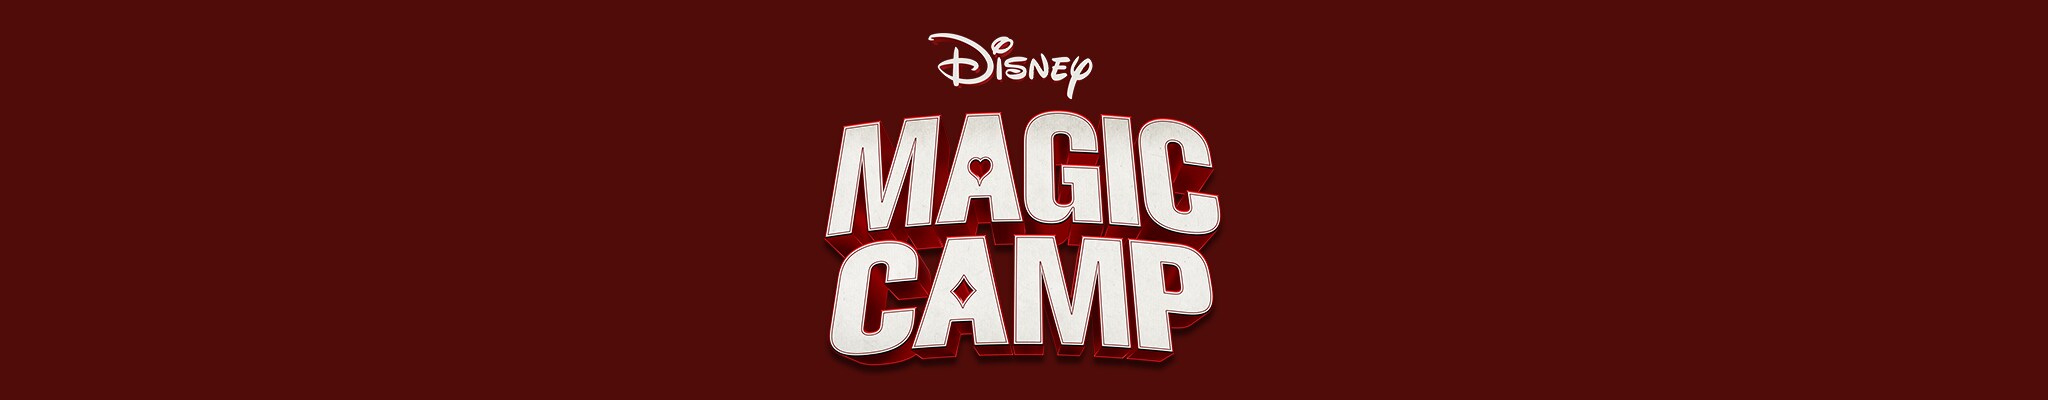 Magic Camp | Disponible ahora. Solo en Disney+